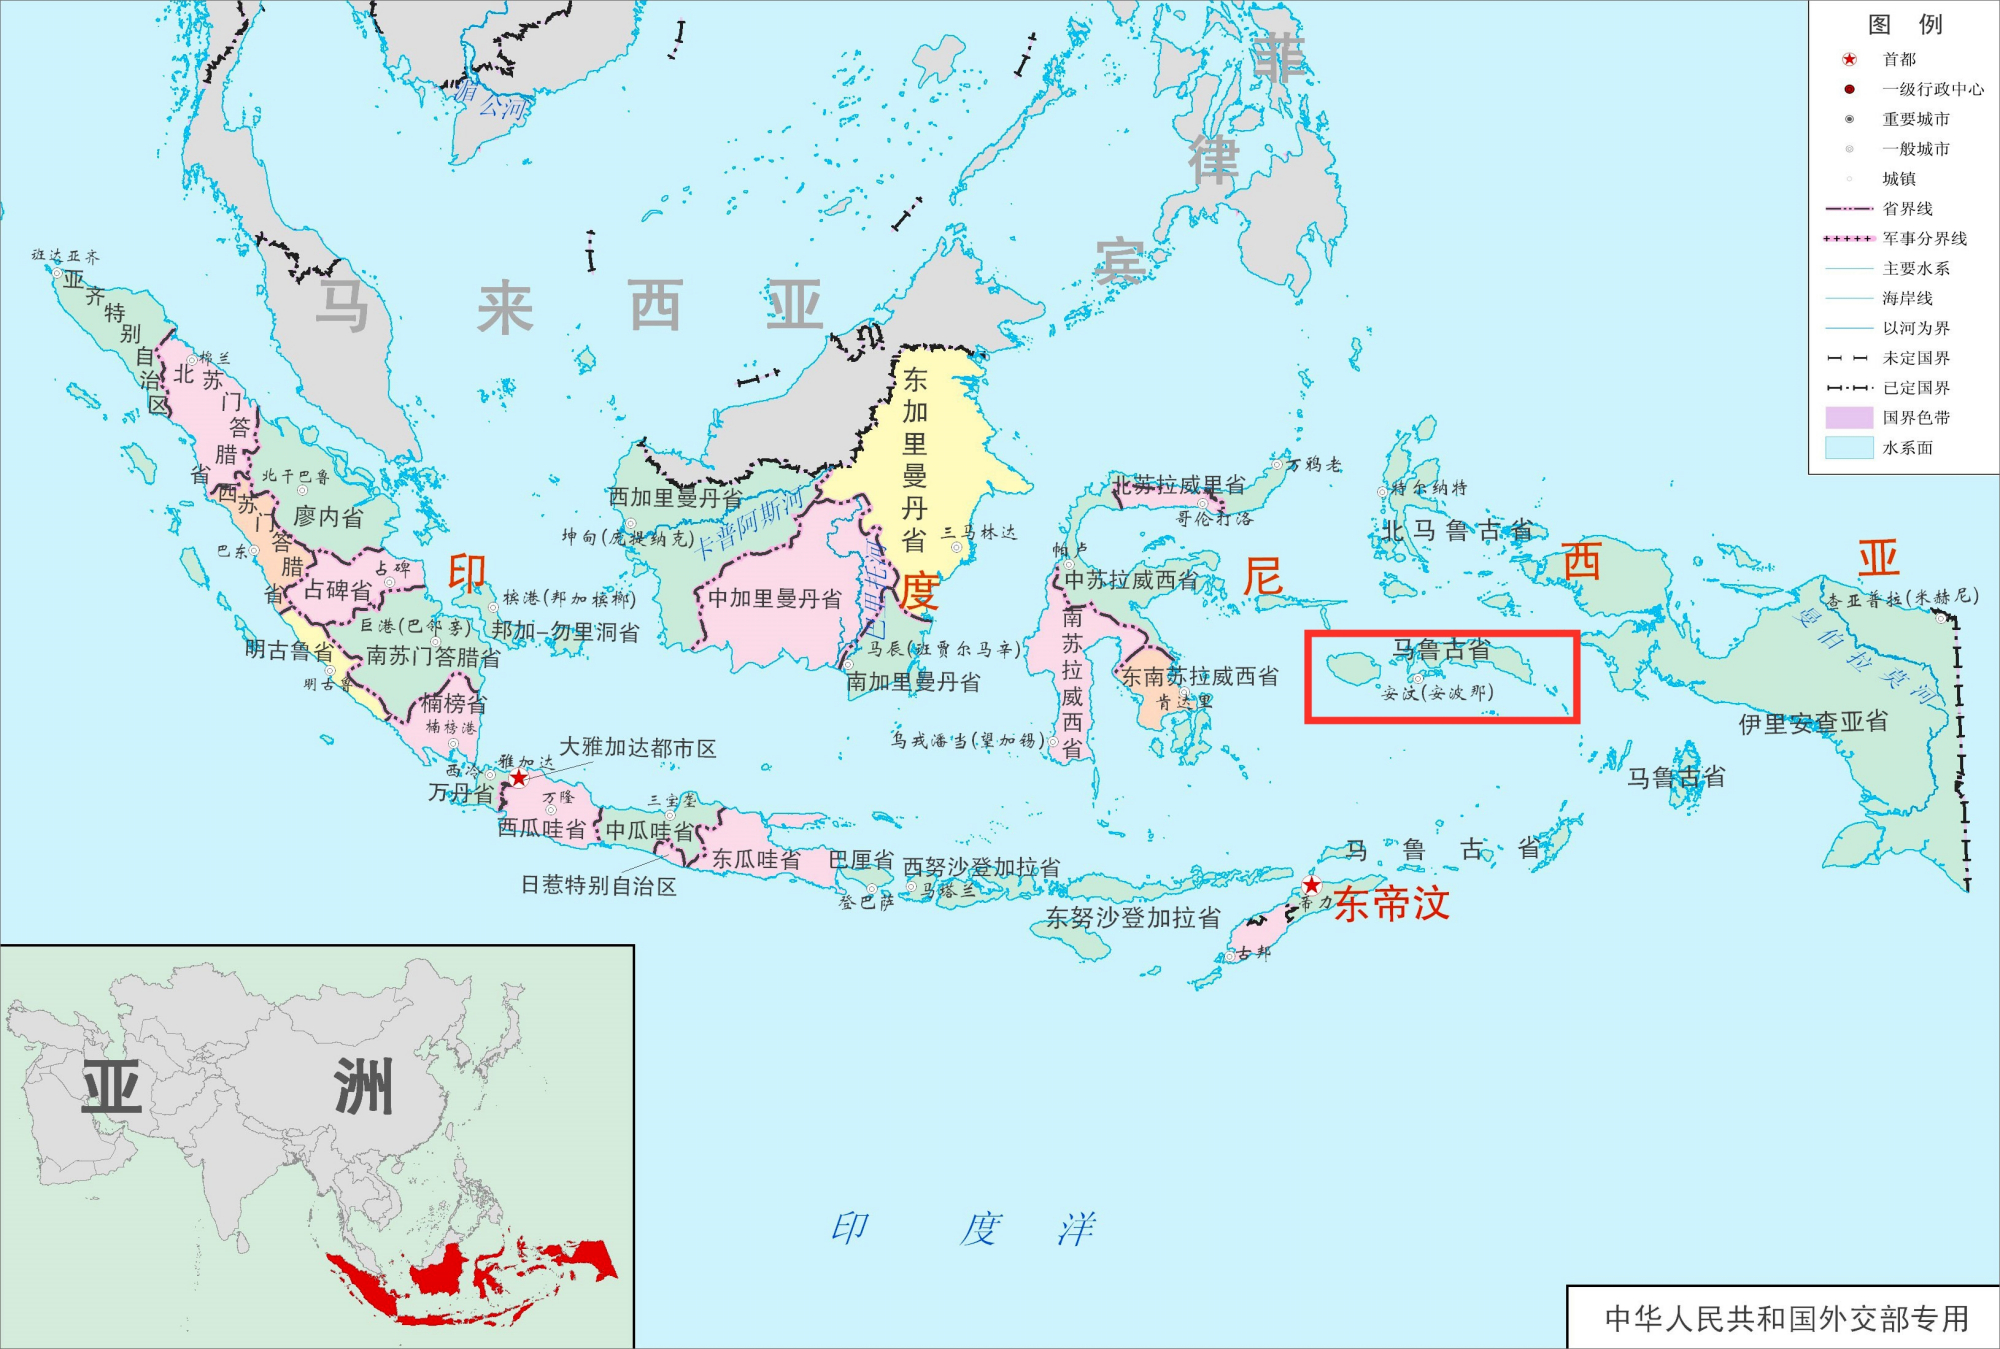 在印度尼西亚的马鲁古省,有一个名为安汶的小岛,此岛面积虽小却物产